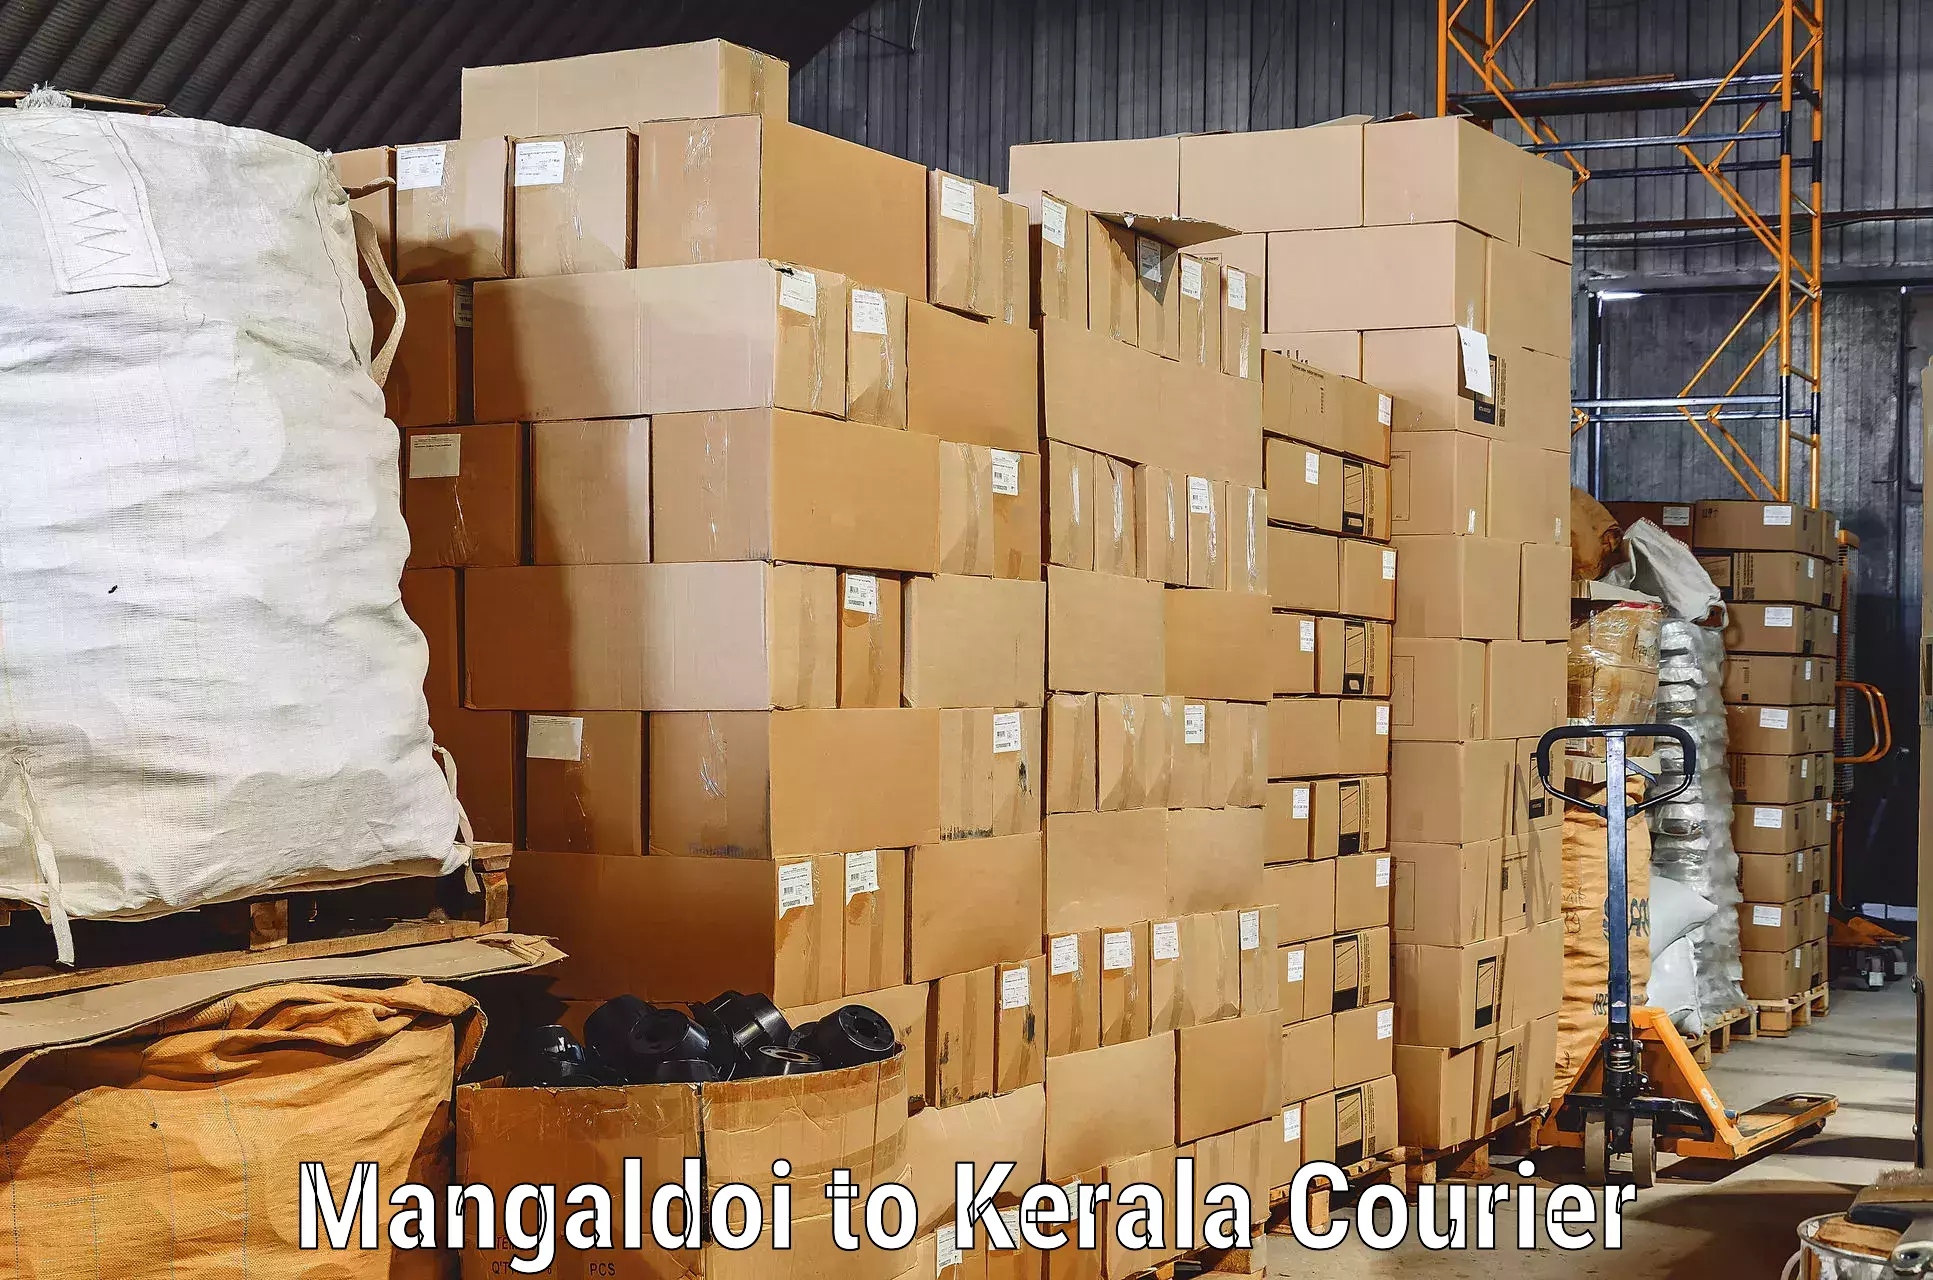 Furniture moving experts Mangaldoi to Mundakayam